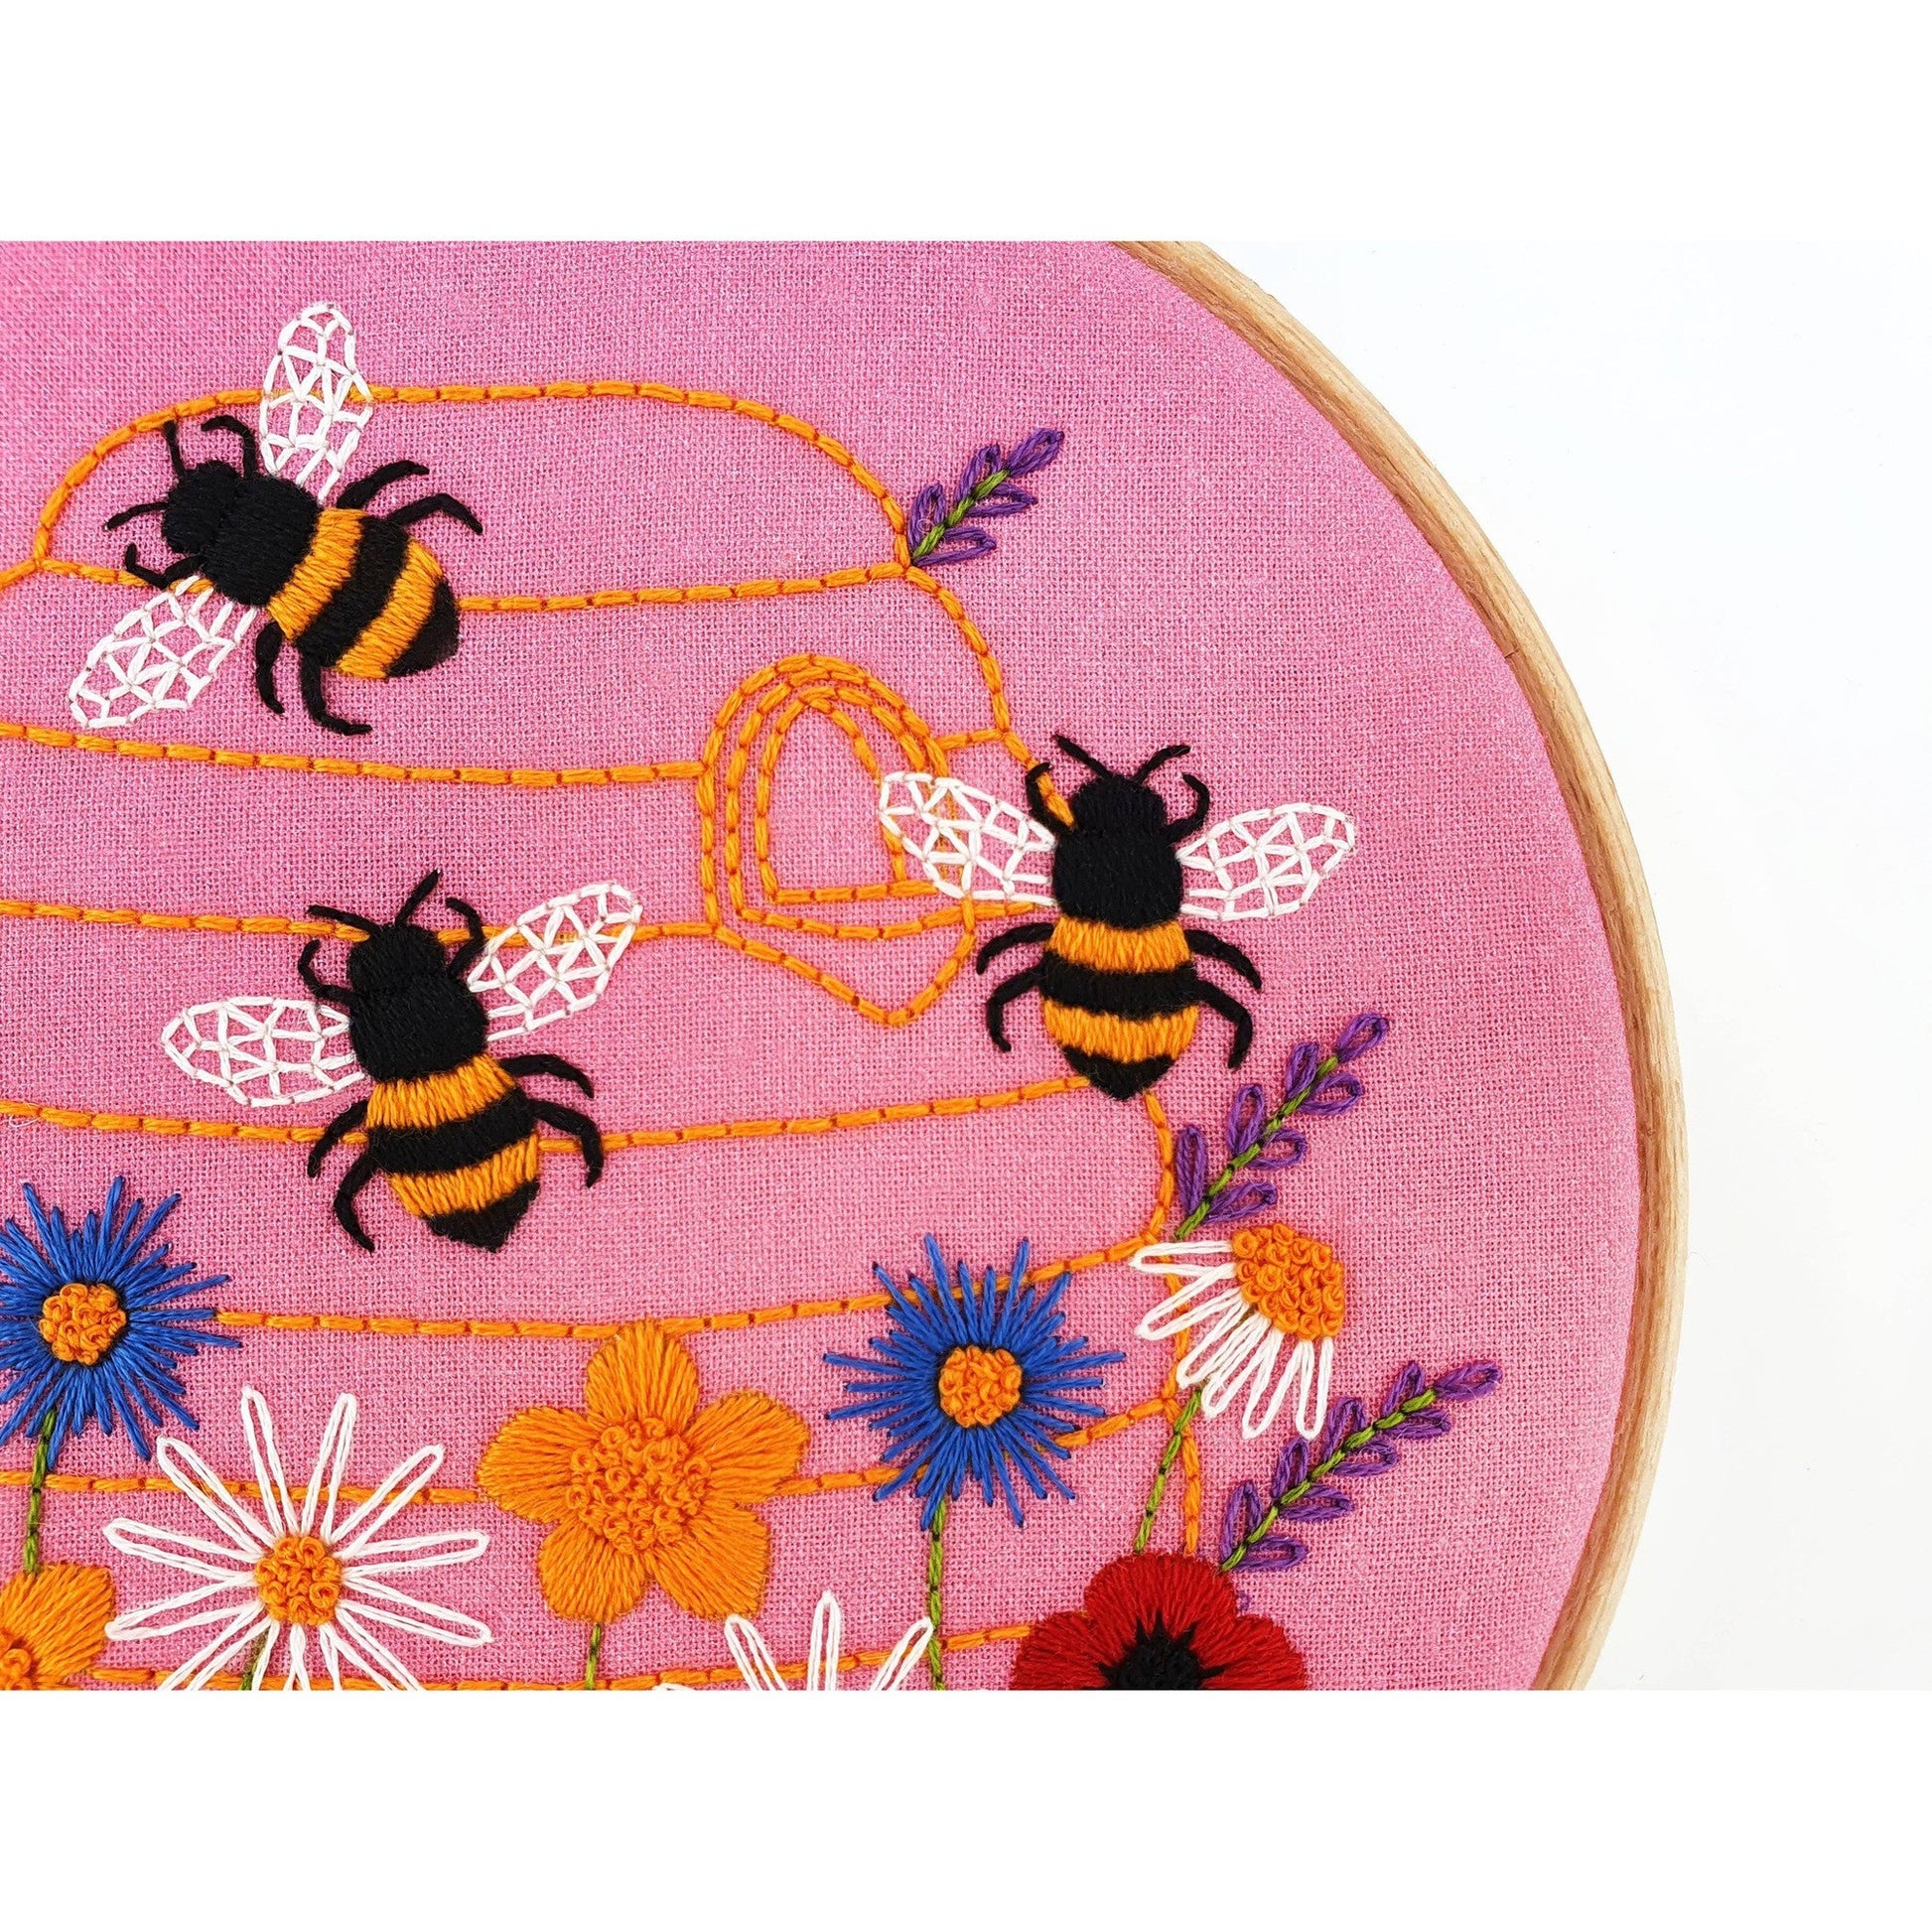 Honey Bees and Wildflowers Handmade Embroidery Kit Hoop